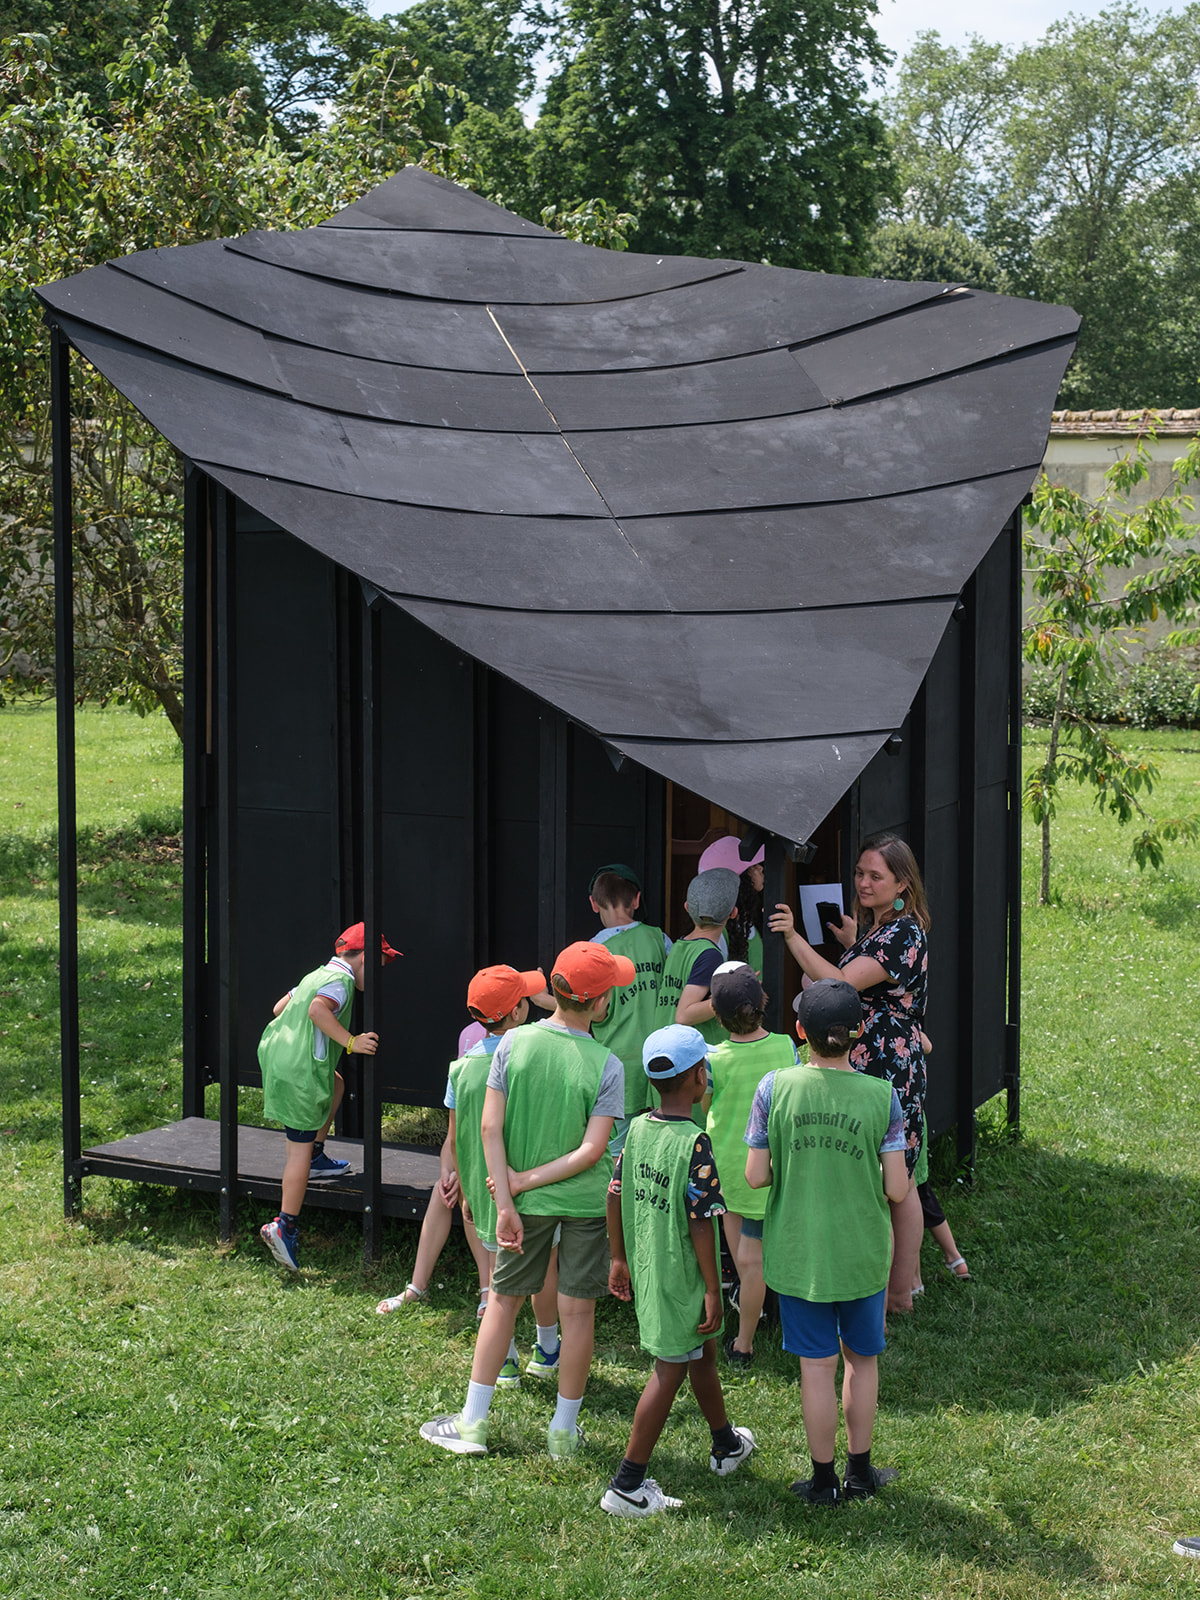 Groupe de jeunes enfants se trouvant dans les jardins de Versailles, observant une structure en bois noir.